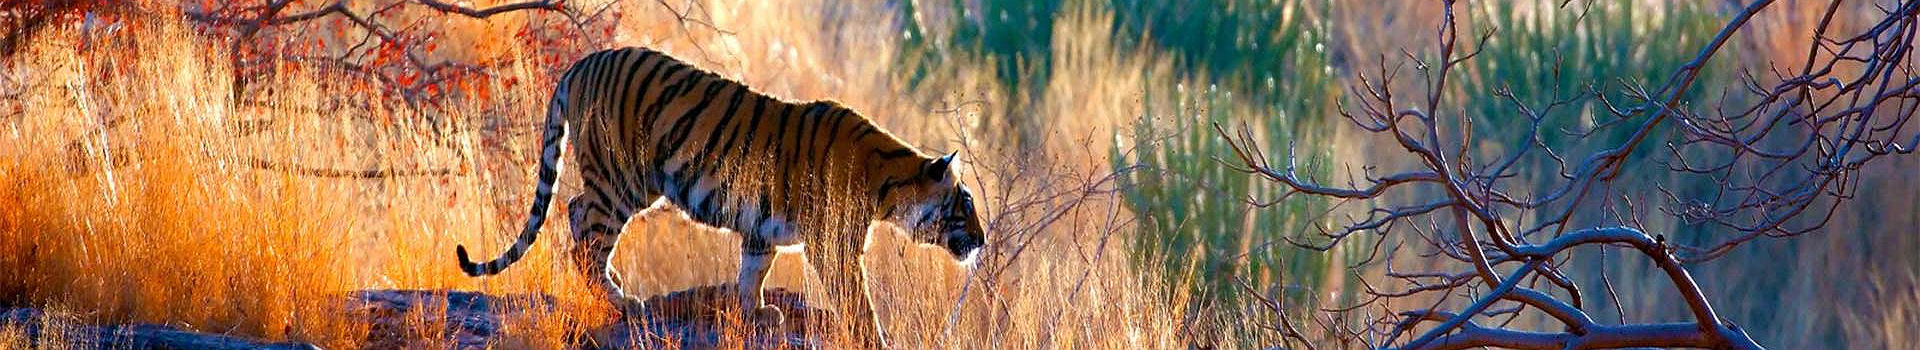 Inde - Portrait d'un tigre de Bengale dans la forêt du parc national de Ranthambore